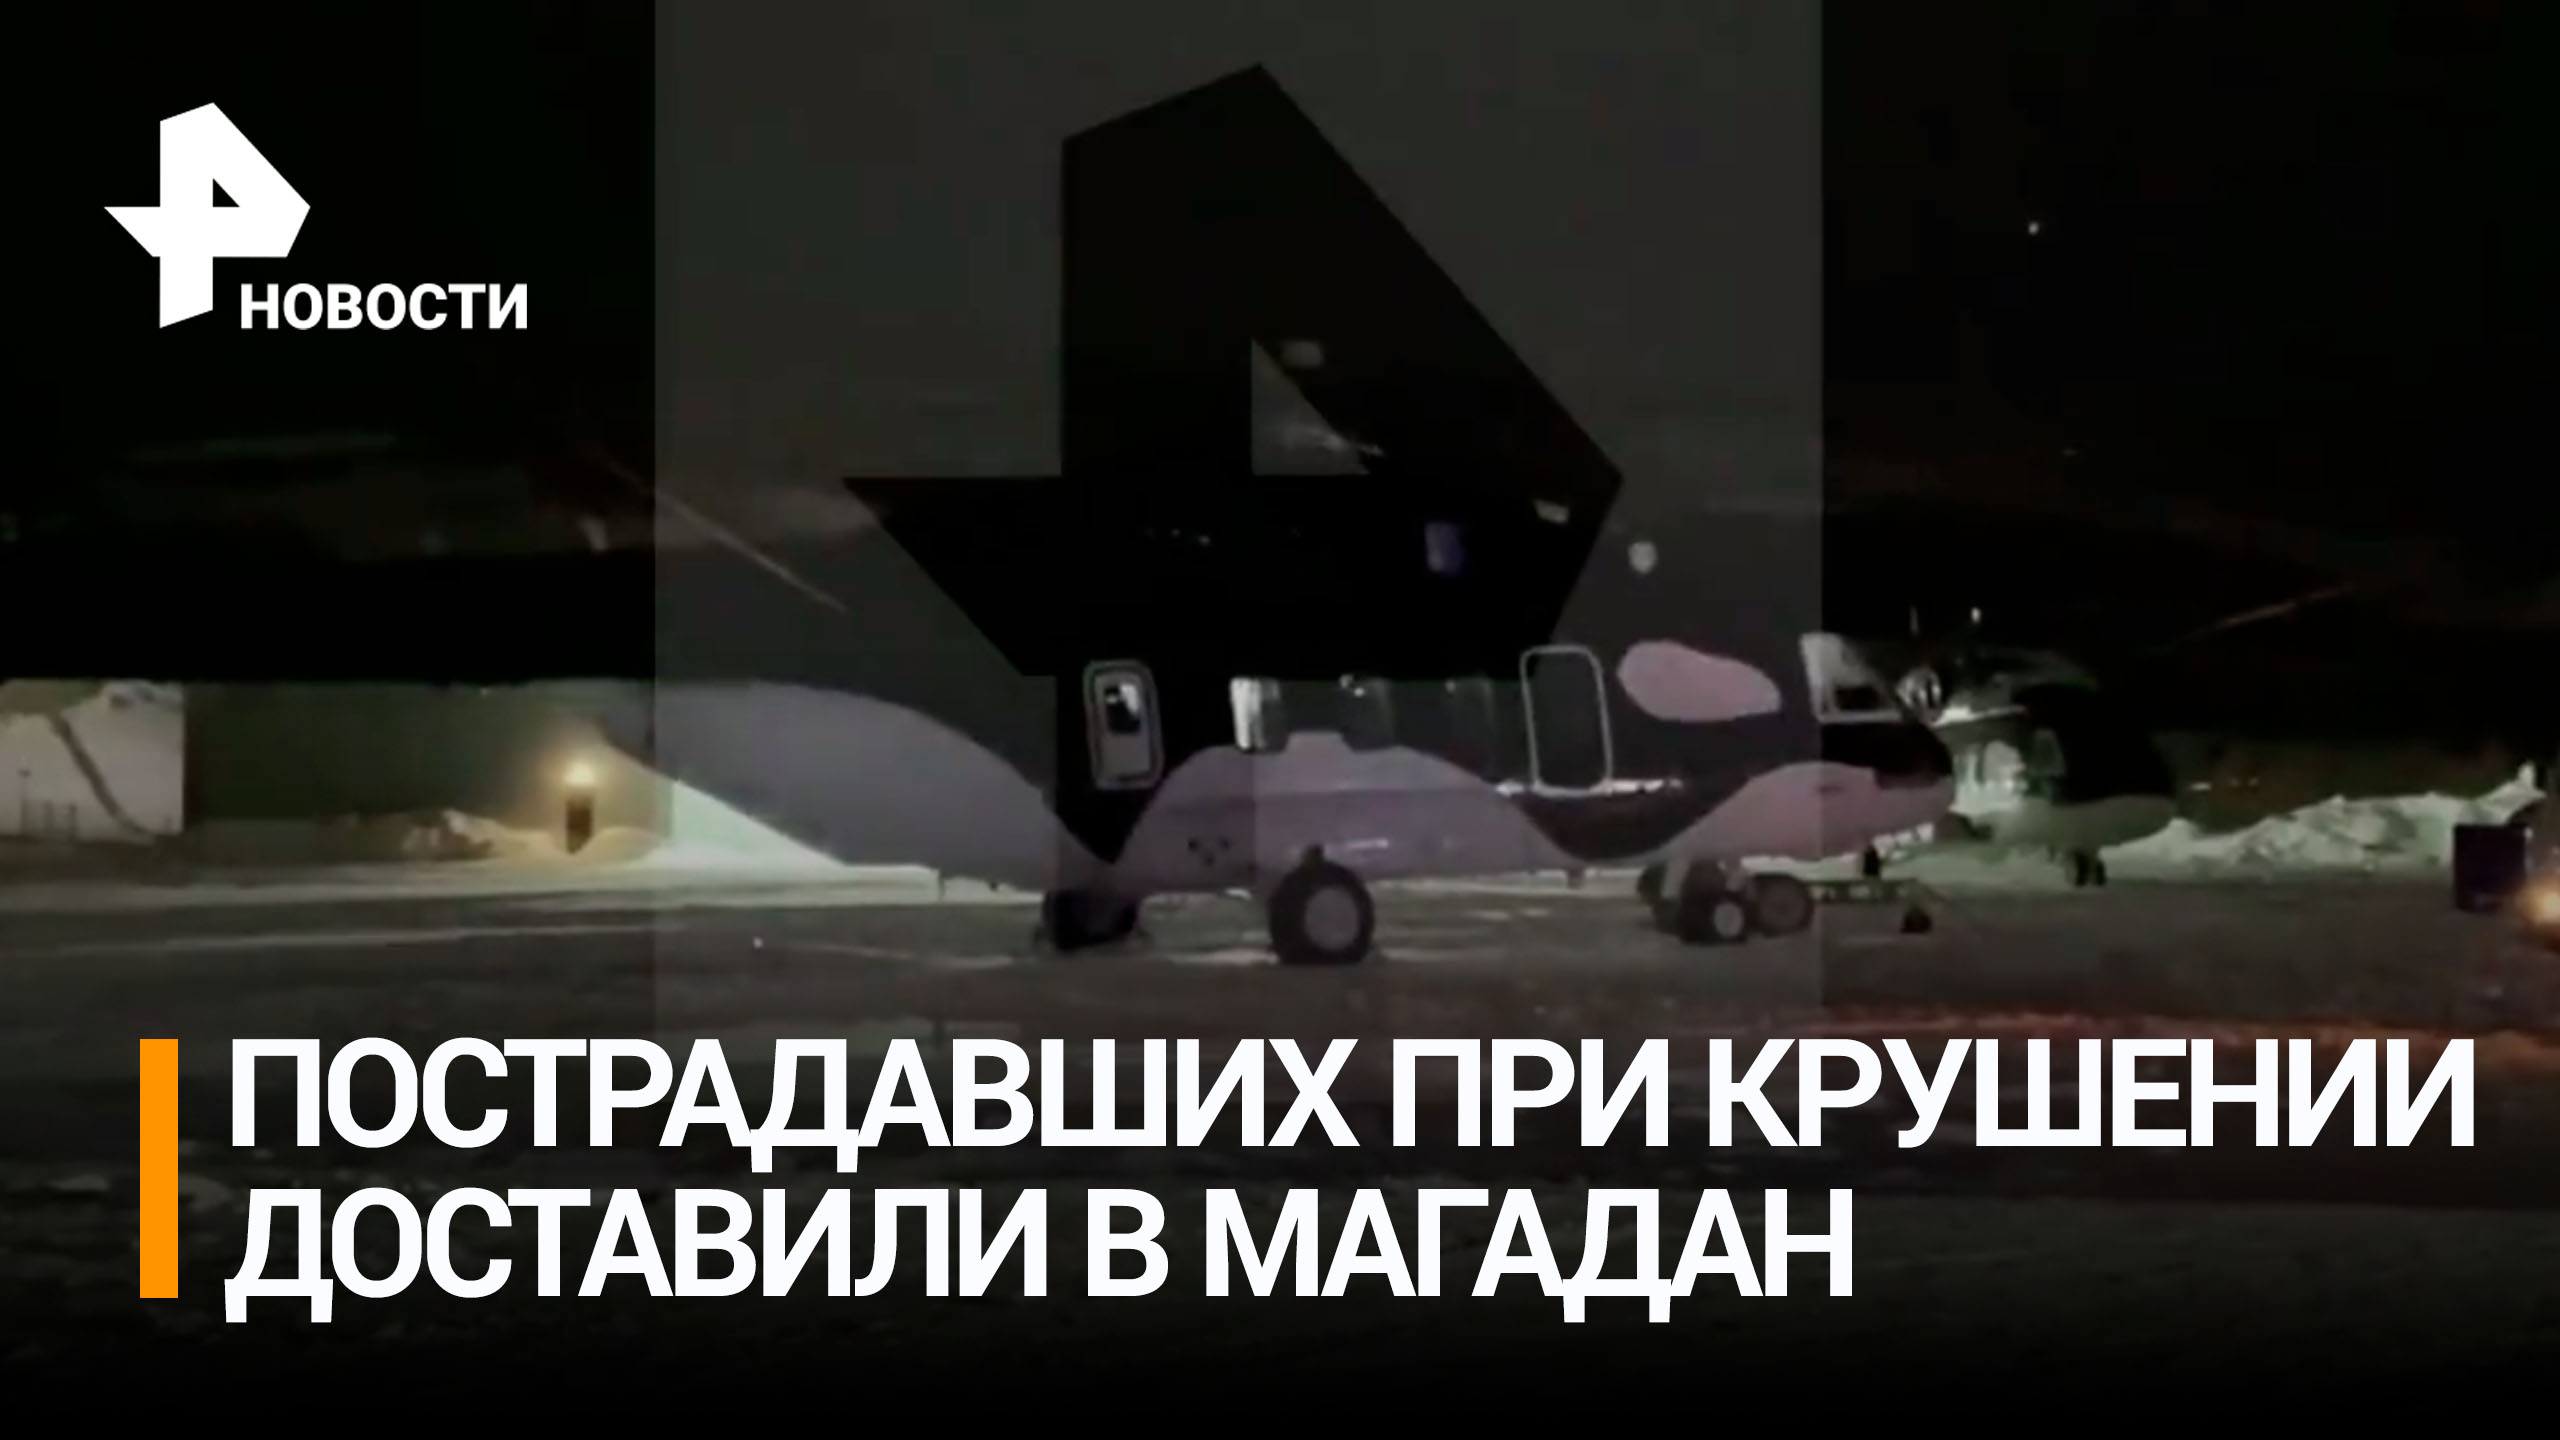 ⚡ ЭКСКЛЮЗИВ ⚡ Пострадавших во время крушения Ми-8 доставили в Магадан